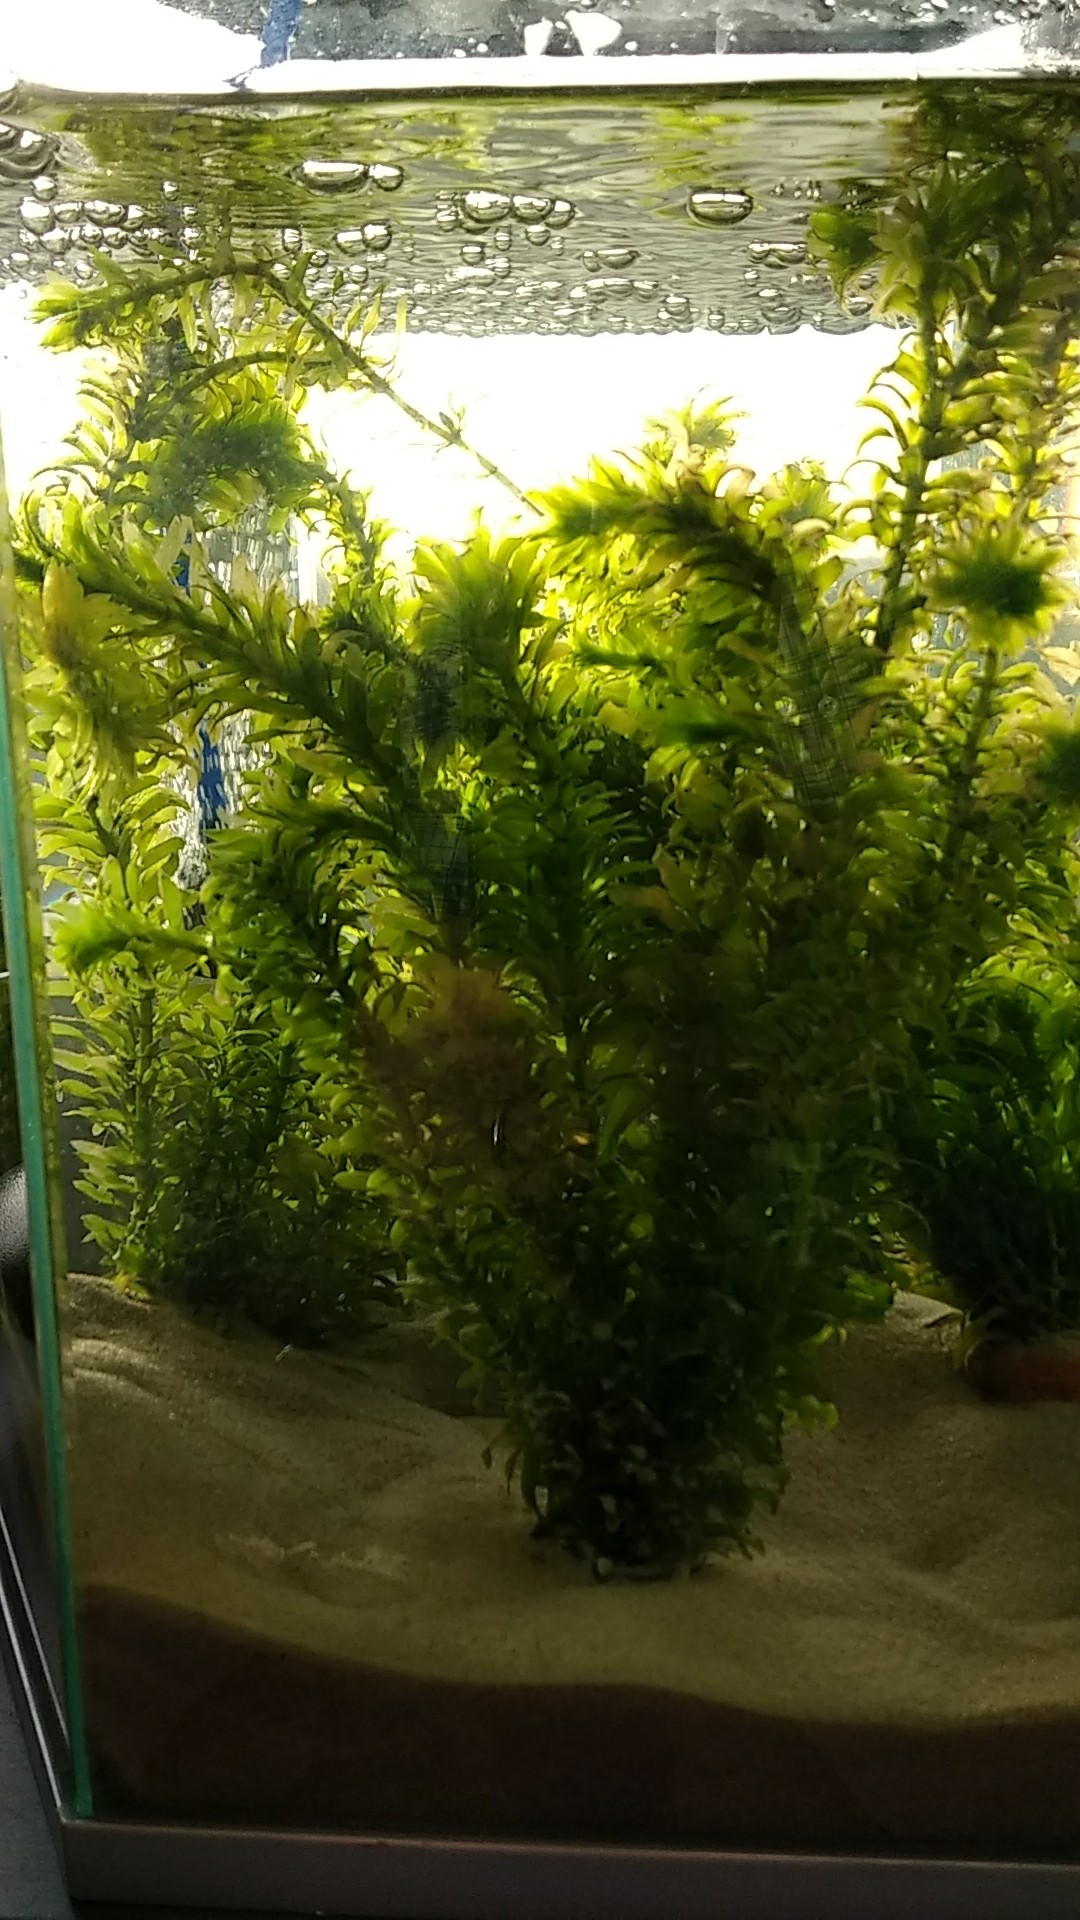 Comment s'occuper d'un aquarium avec des plantes? Suivez nos conseils